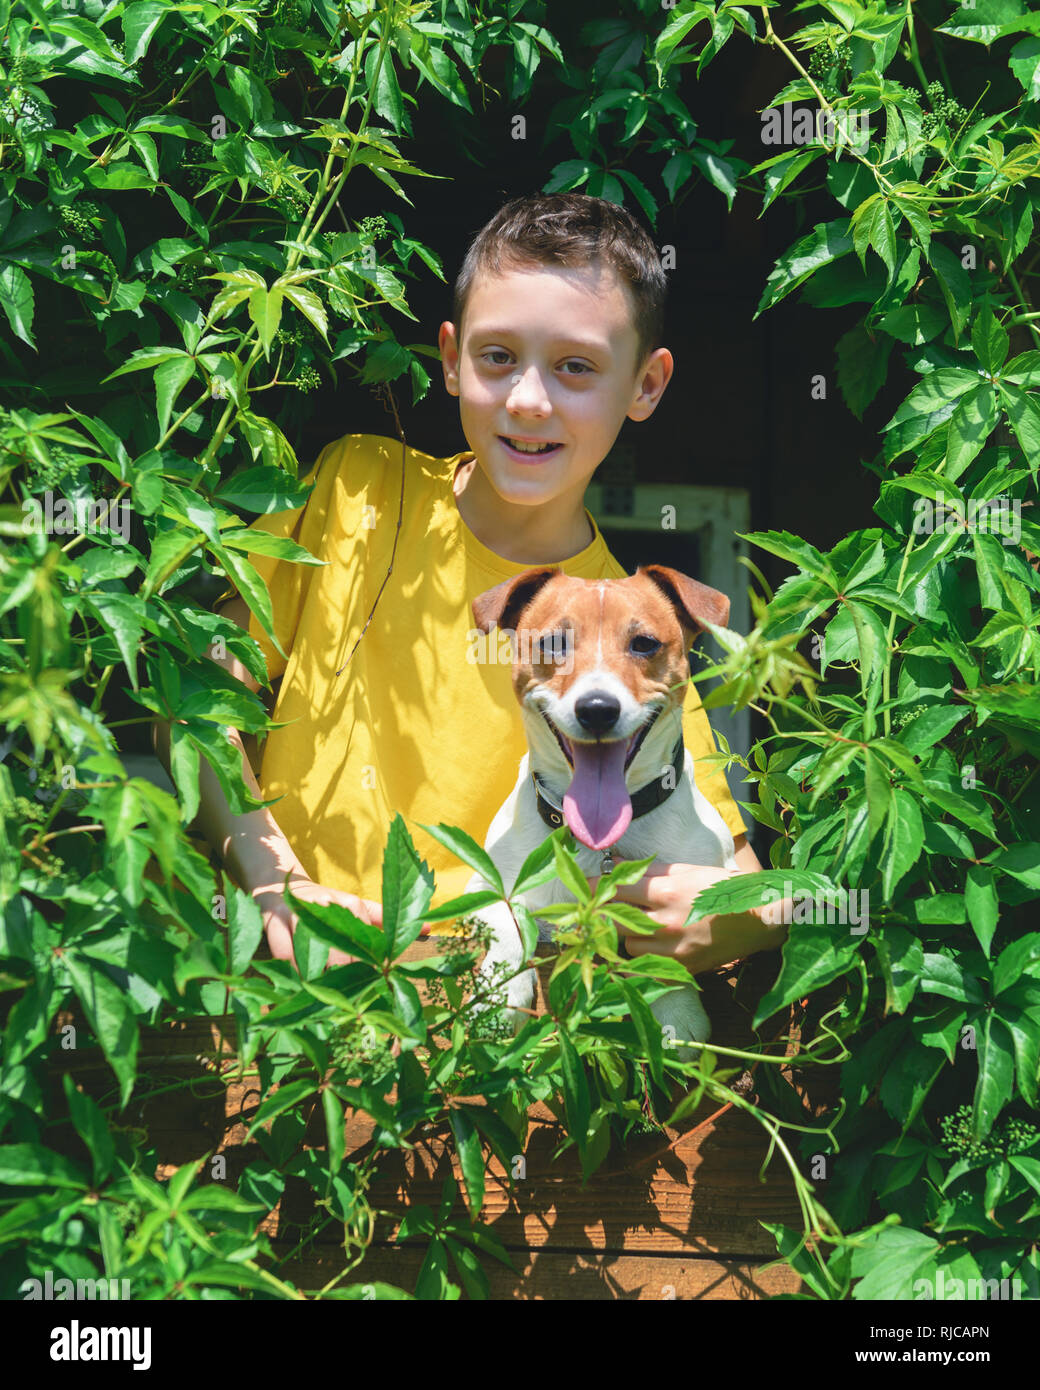 Smiling boy with dog on treehouse. L'heure d'été ! Concept de la petite enfance Banque D'Images